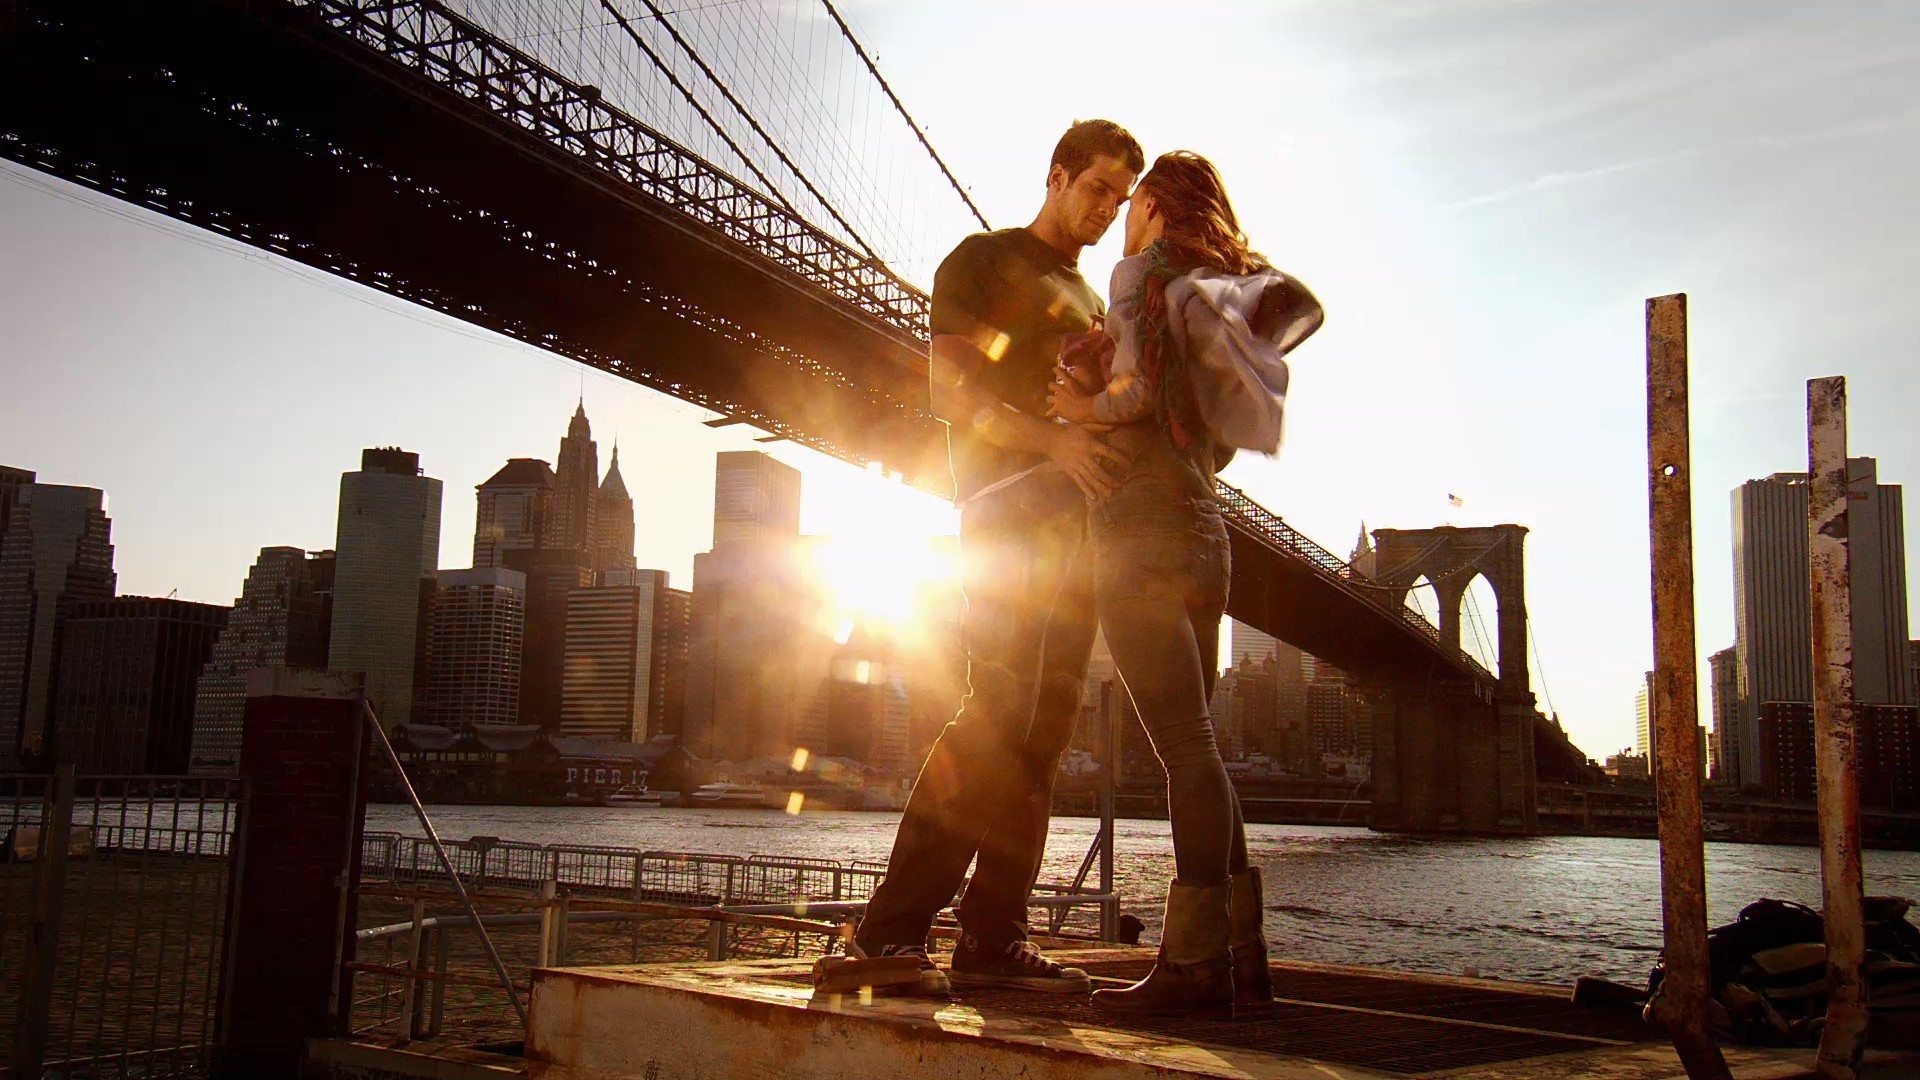 3d обои Девушка в сапогах и парень в кроссовках обнимаются в лучах заката на фоне manhattan bridge / манхэттенского моста в Нью-Йорк / New York  любовь # 51724